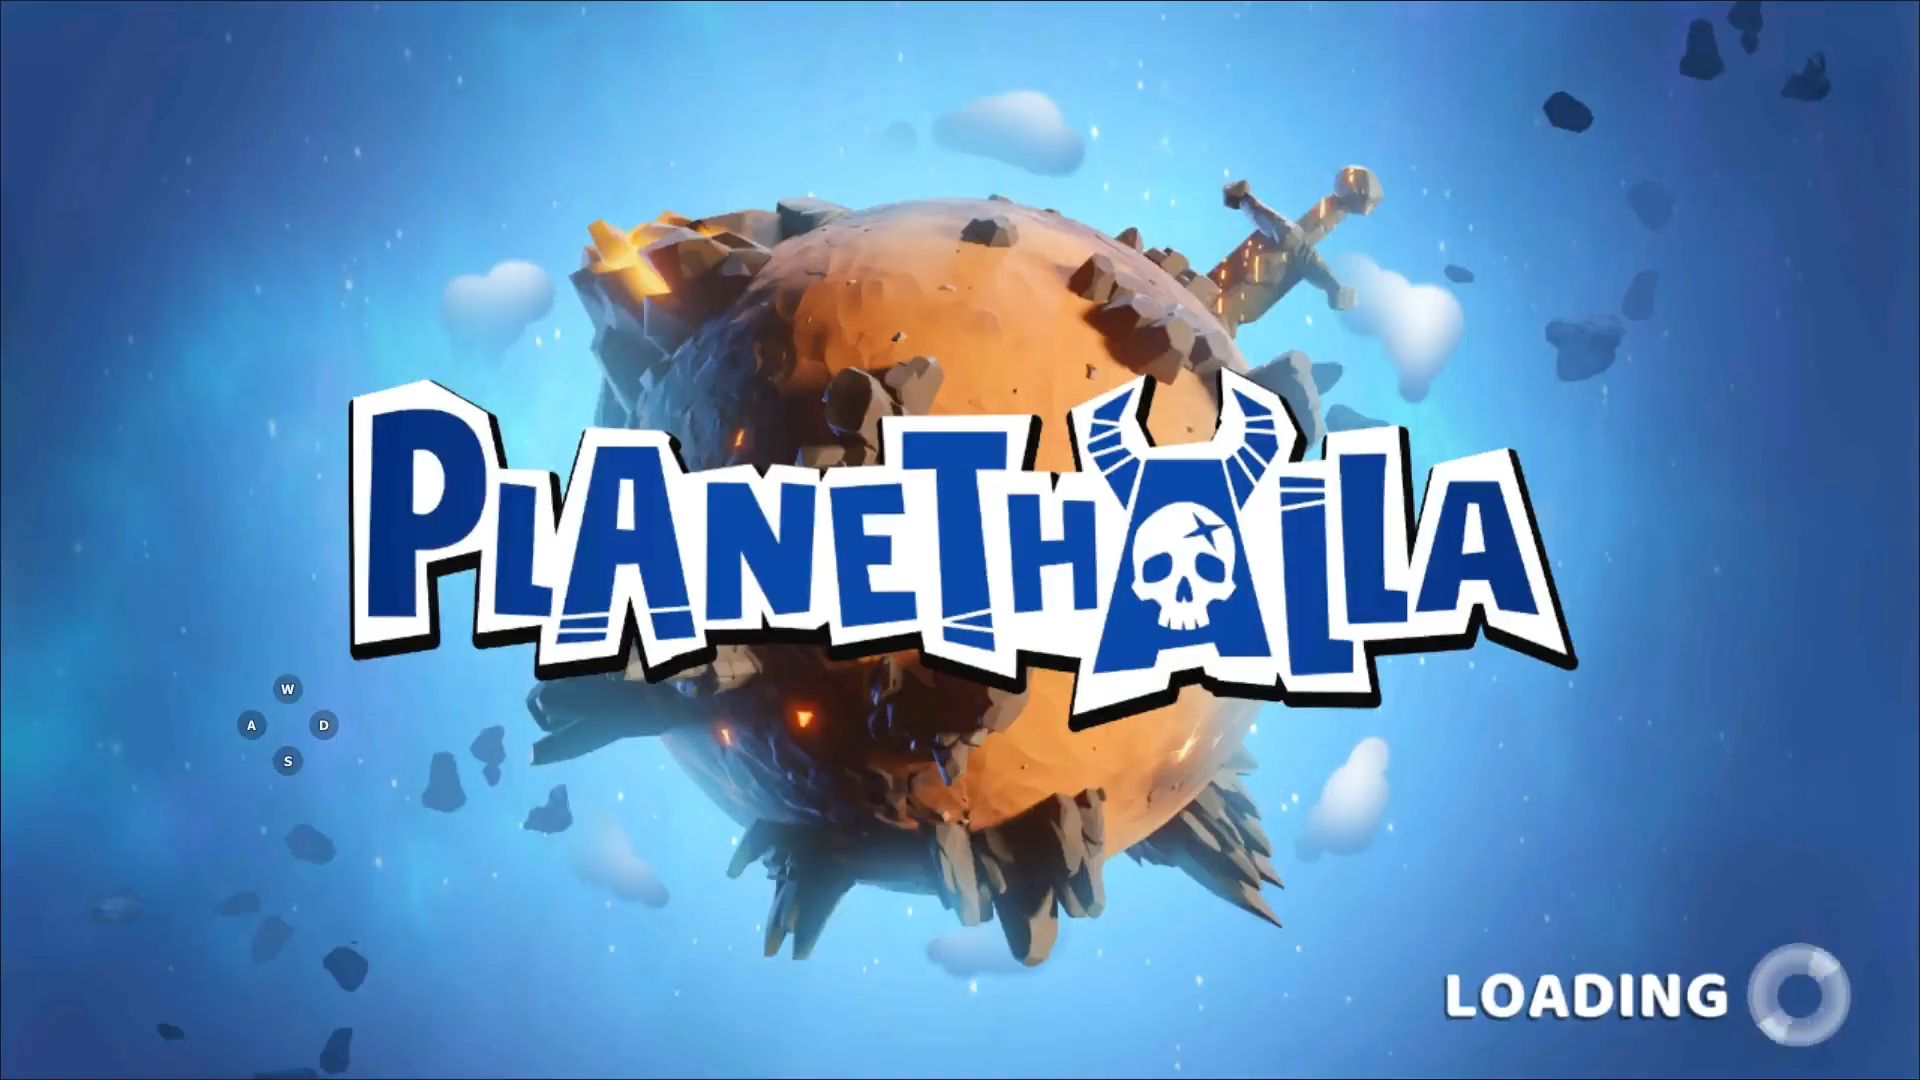 Descargar Planethalla gratis para Android.